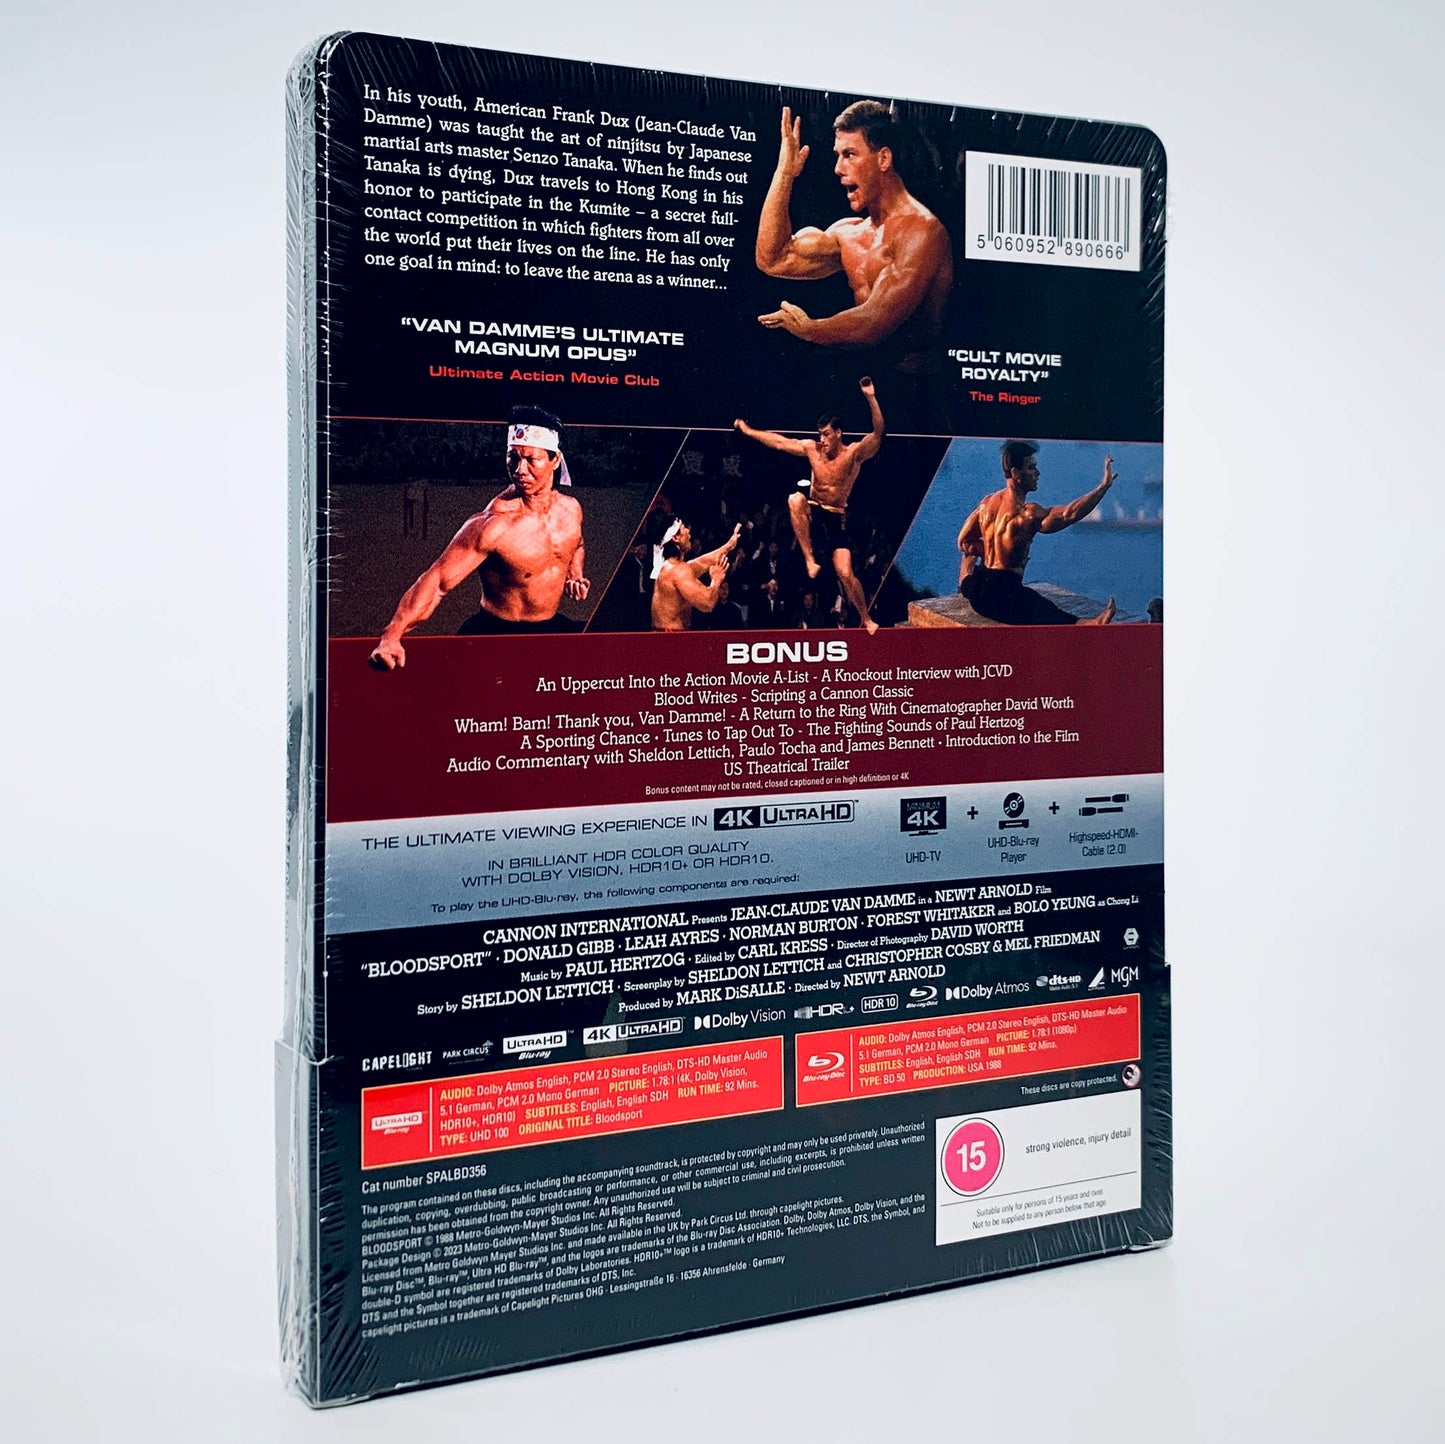 Bloodsport Blood Sport Jean-Claude Van Damme Bolo kickboxer SteelBook Steel Book 4K Ultra HD